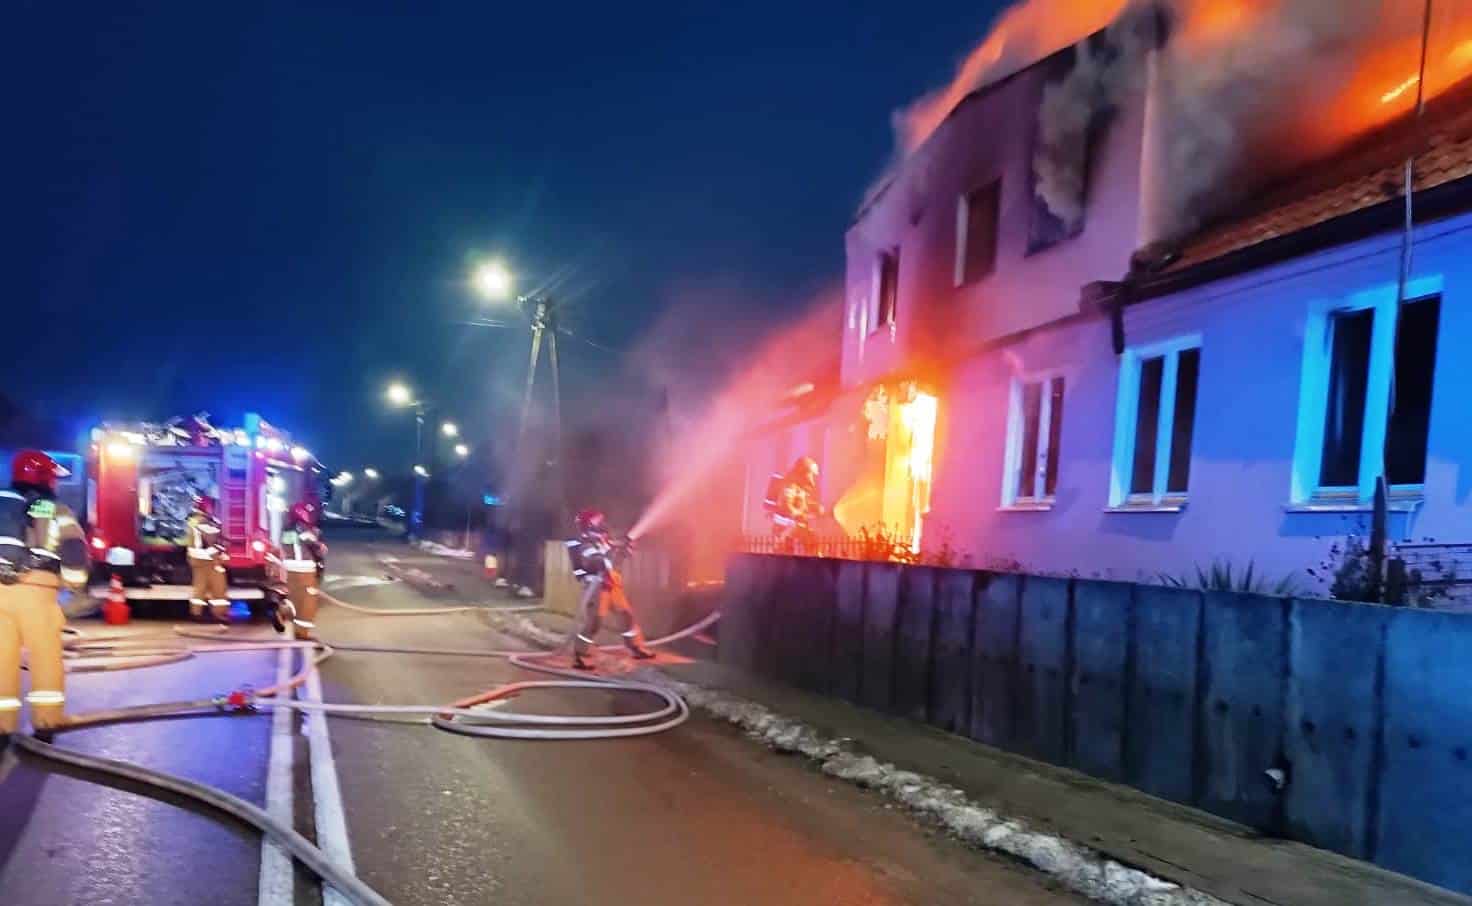 Gdyby nie odwaga strażaków, doszłoby do ogromnej eksplozji pożar Elbląg, Olsztyn, Wiadomości